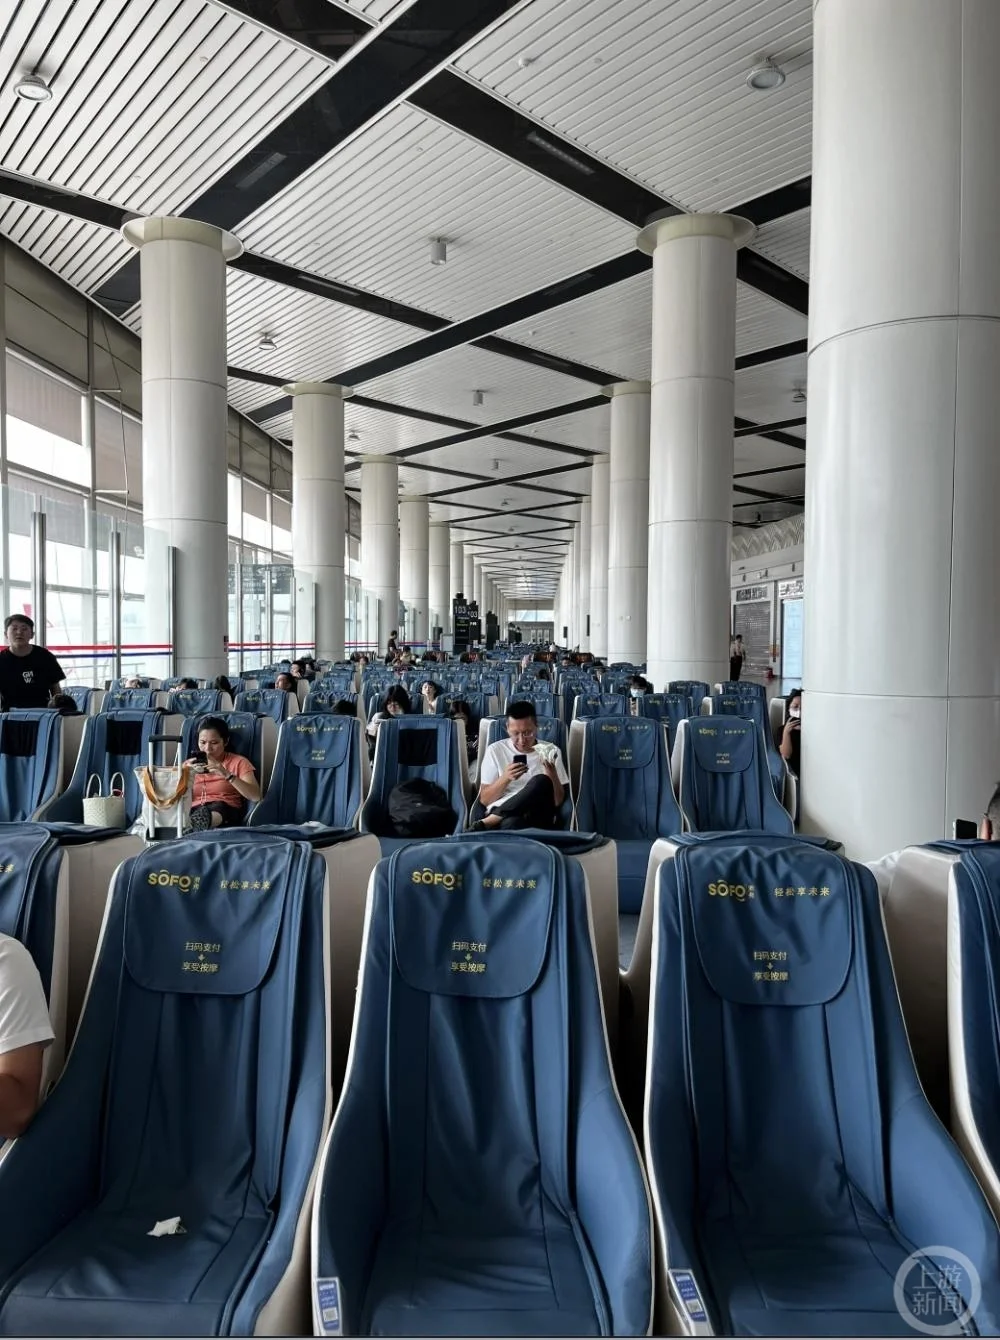 ▲太原机场摆放的共享按摩椅。图片来源/网络截图